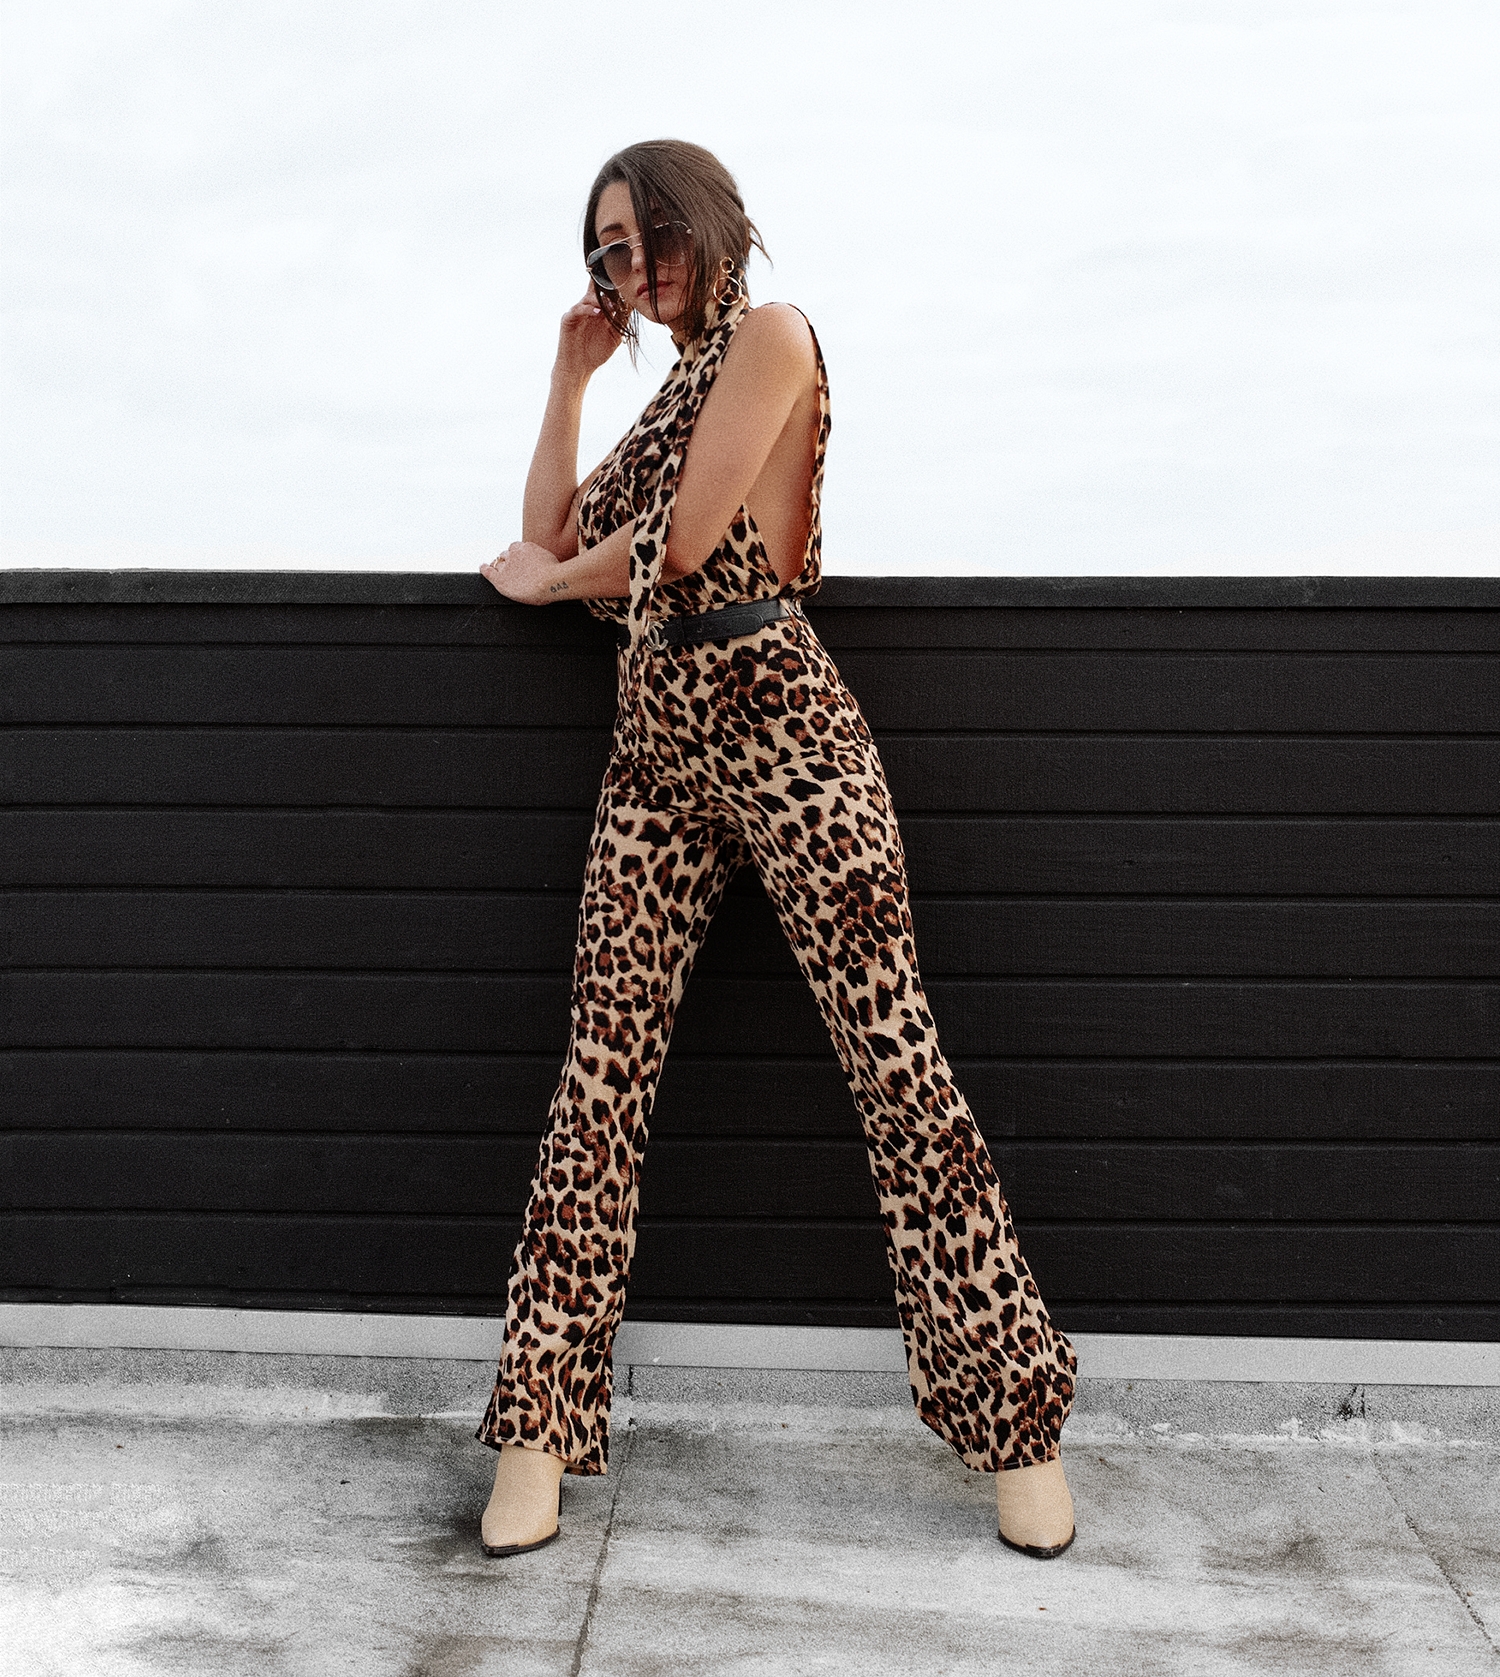 fashionlush, adulting af, leopard fashion